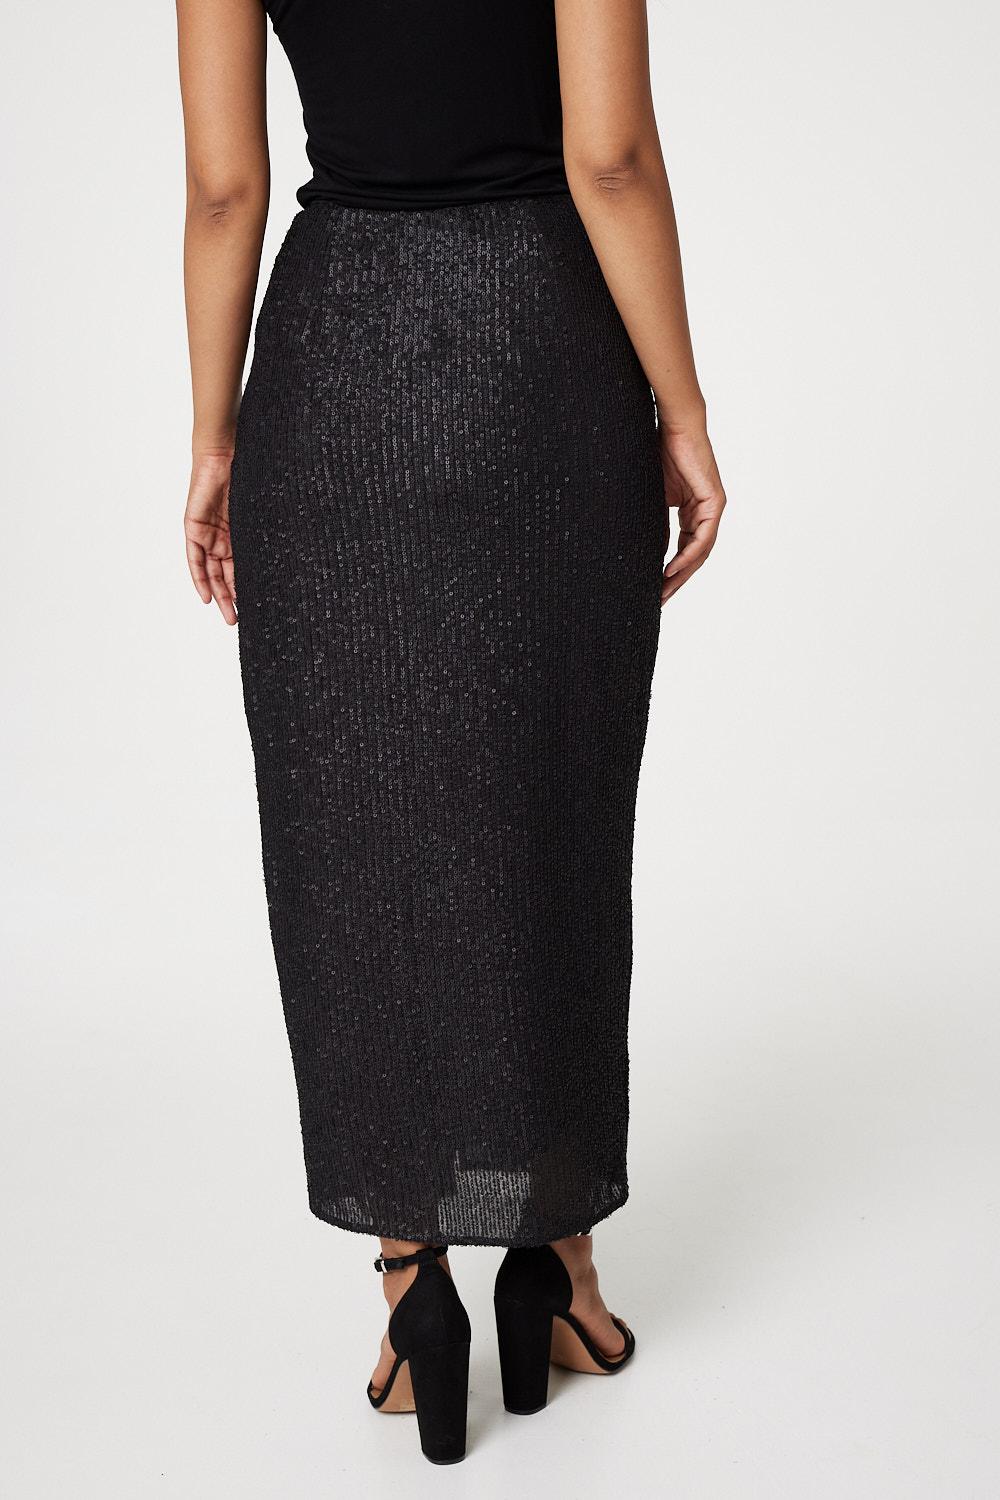 Black | Sequin High Waist Wrap Skirt